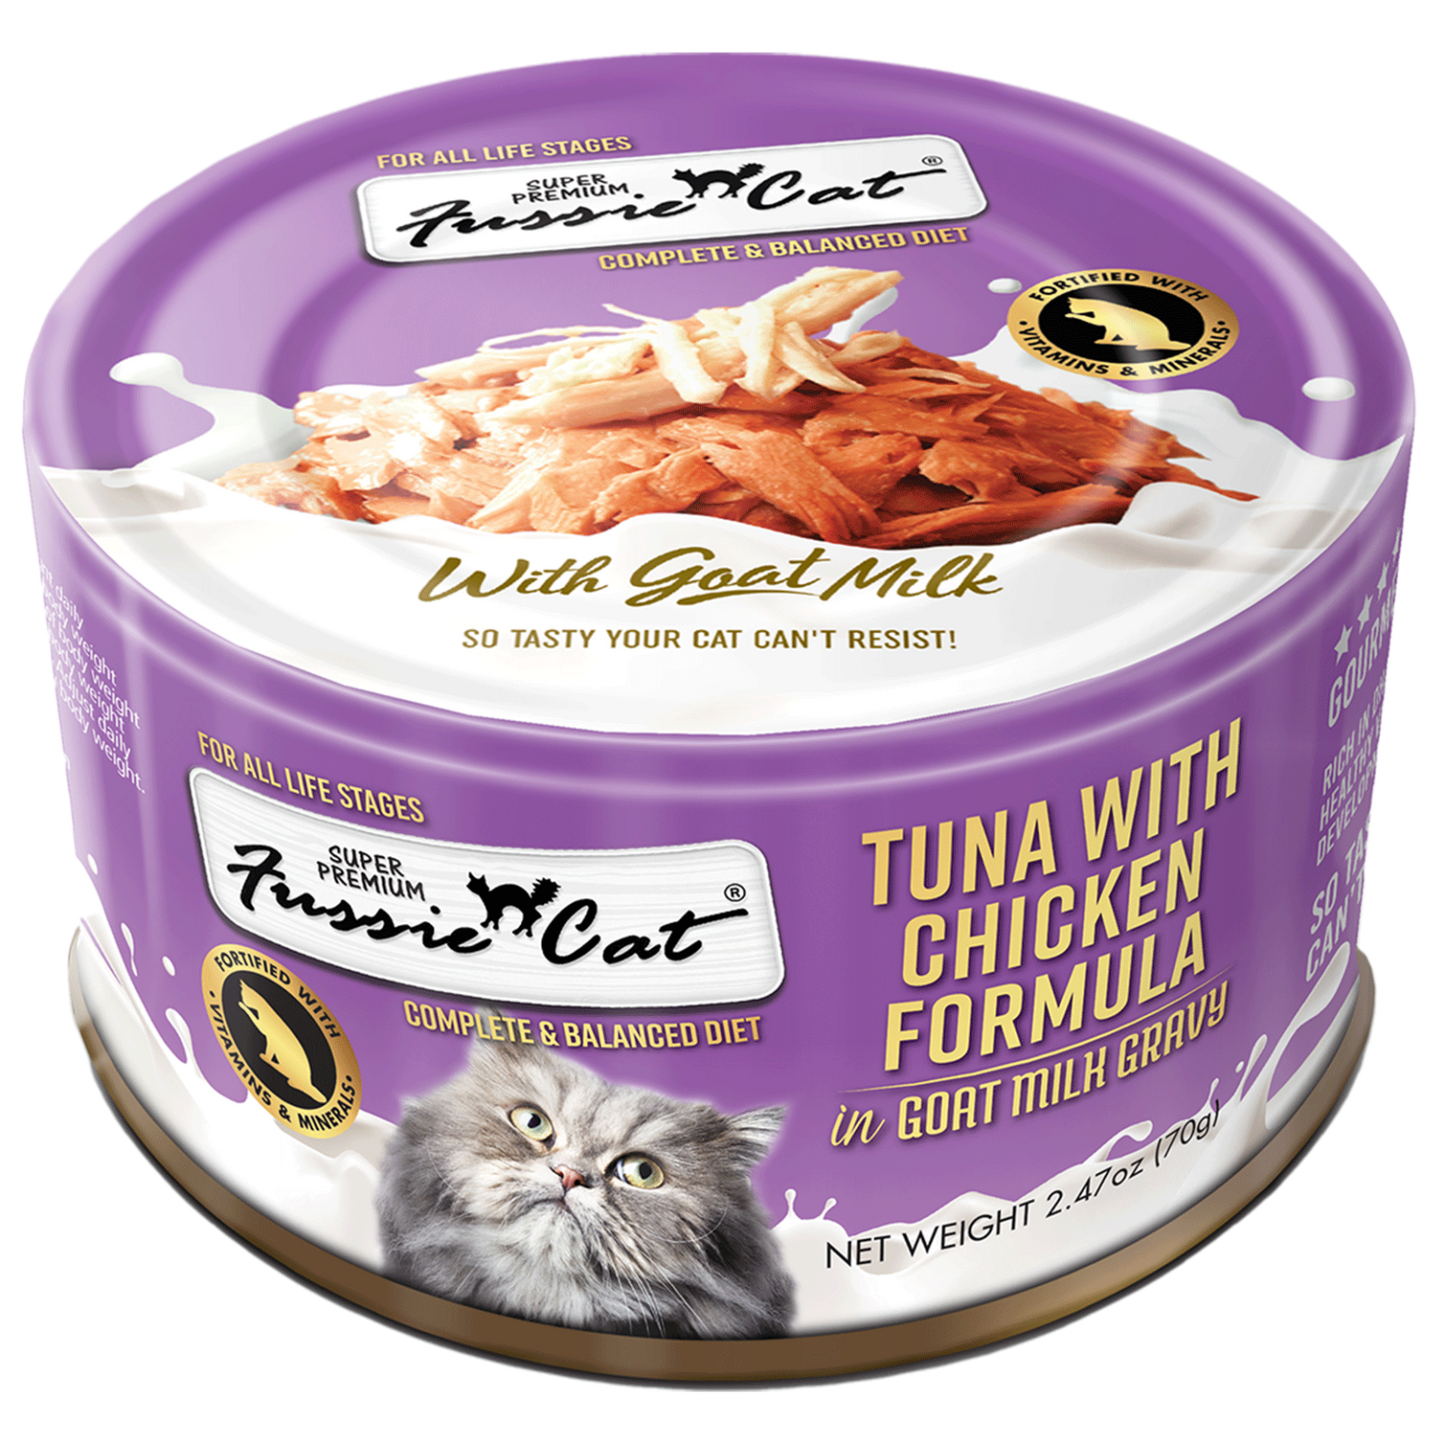 Fussie Cat Super Premium Tuna with Chicken in Goat Milk Gravy